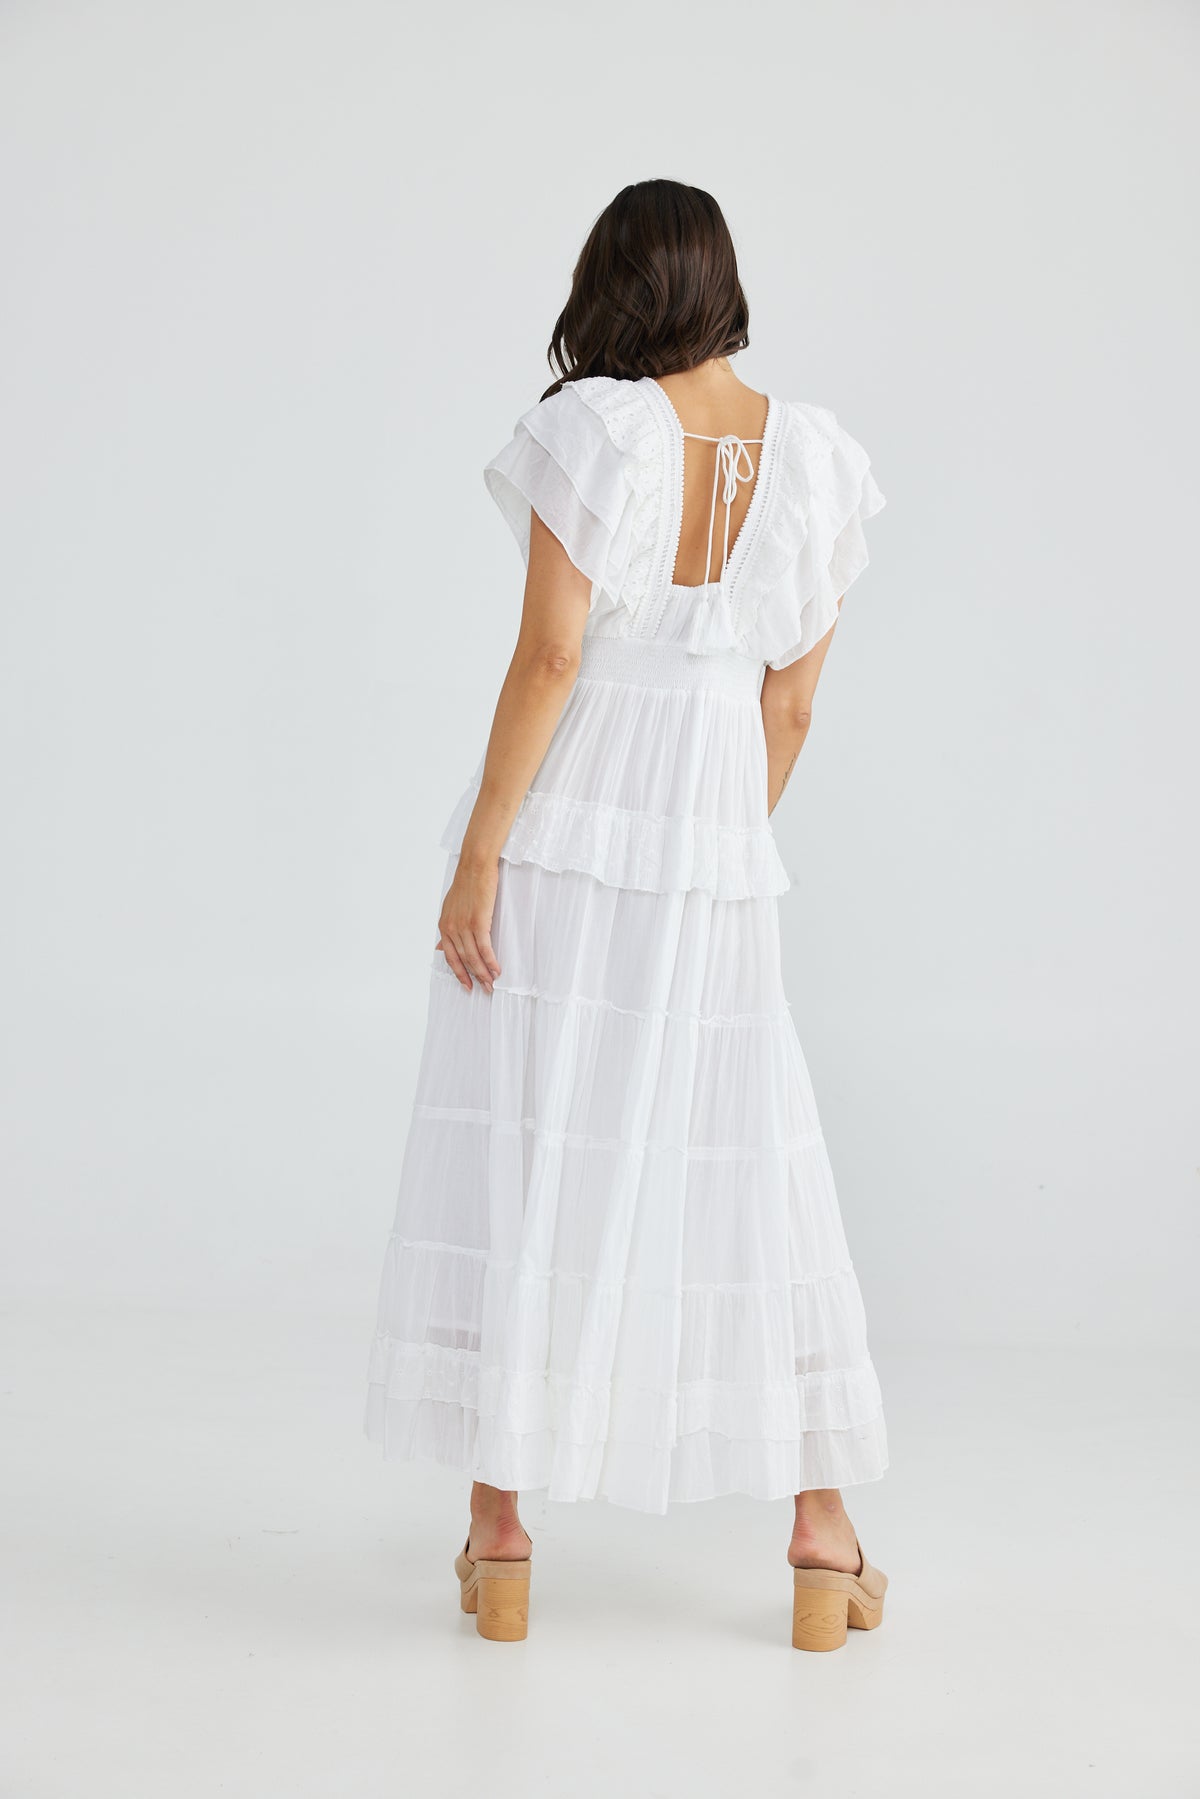 Poppy dress - white